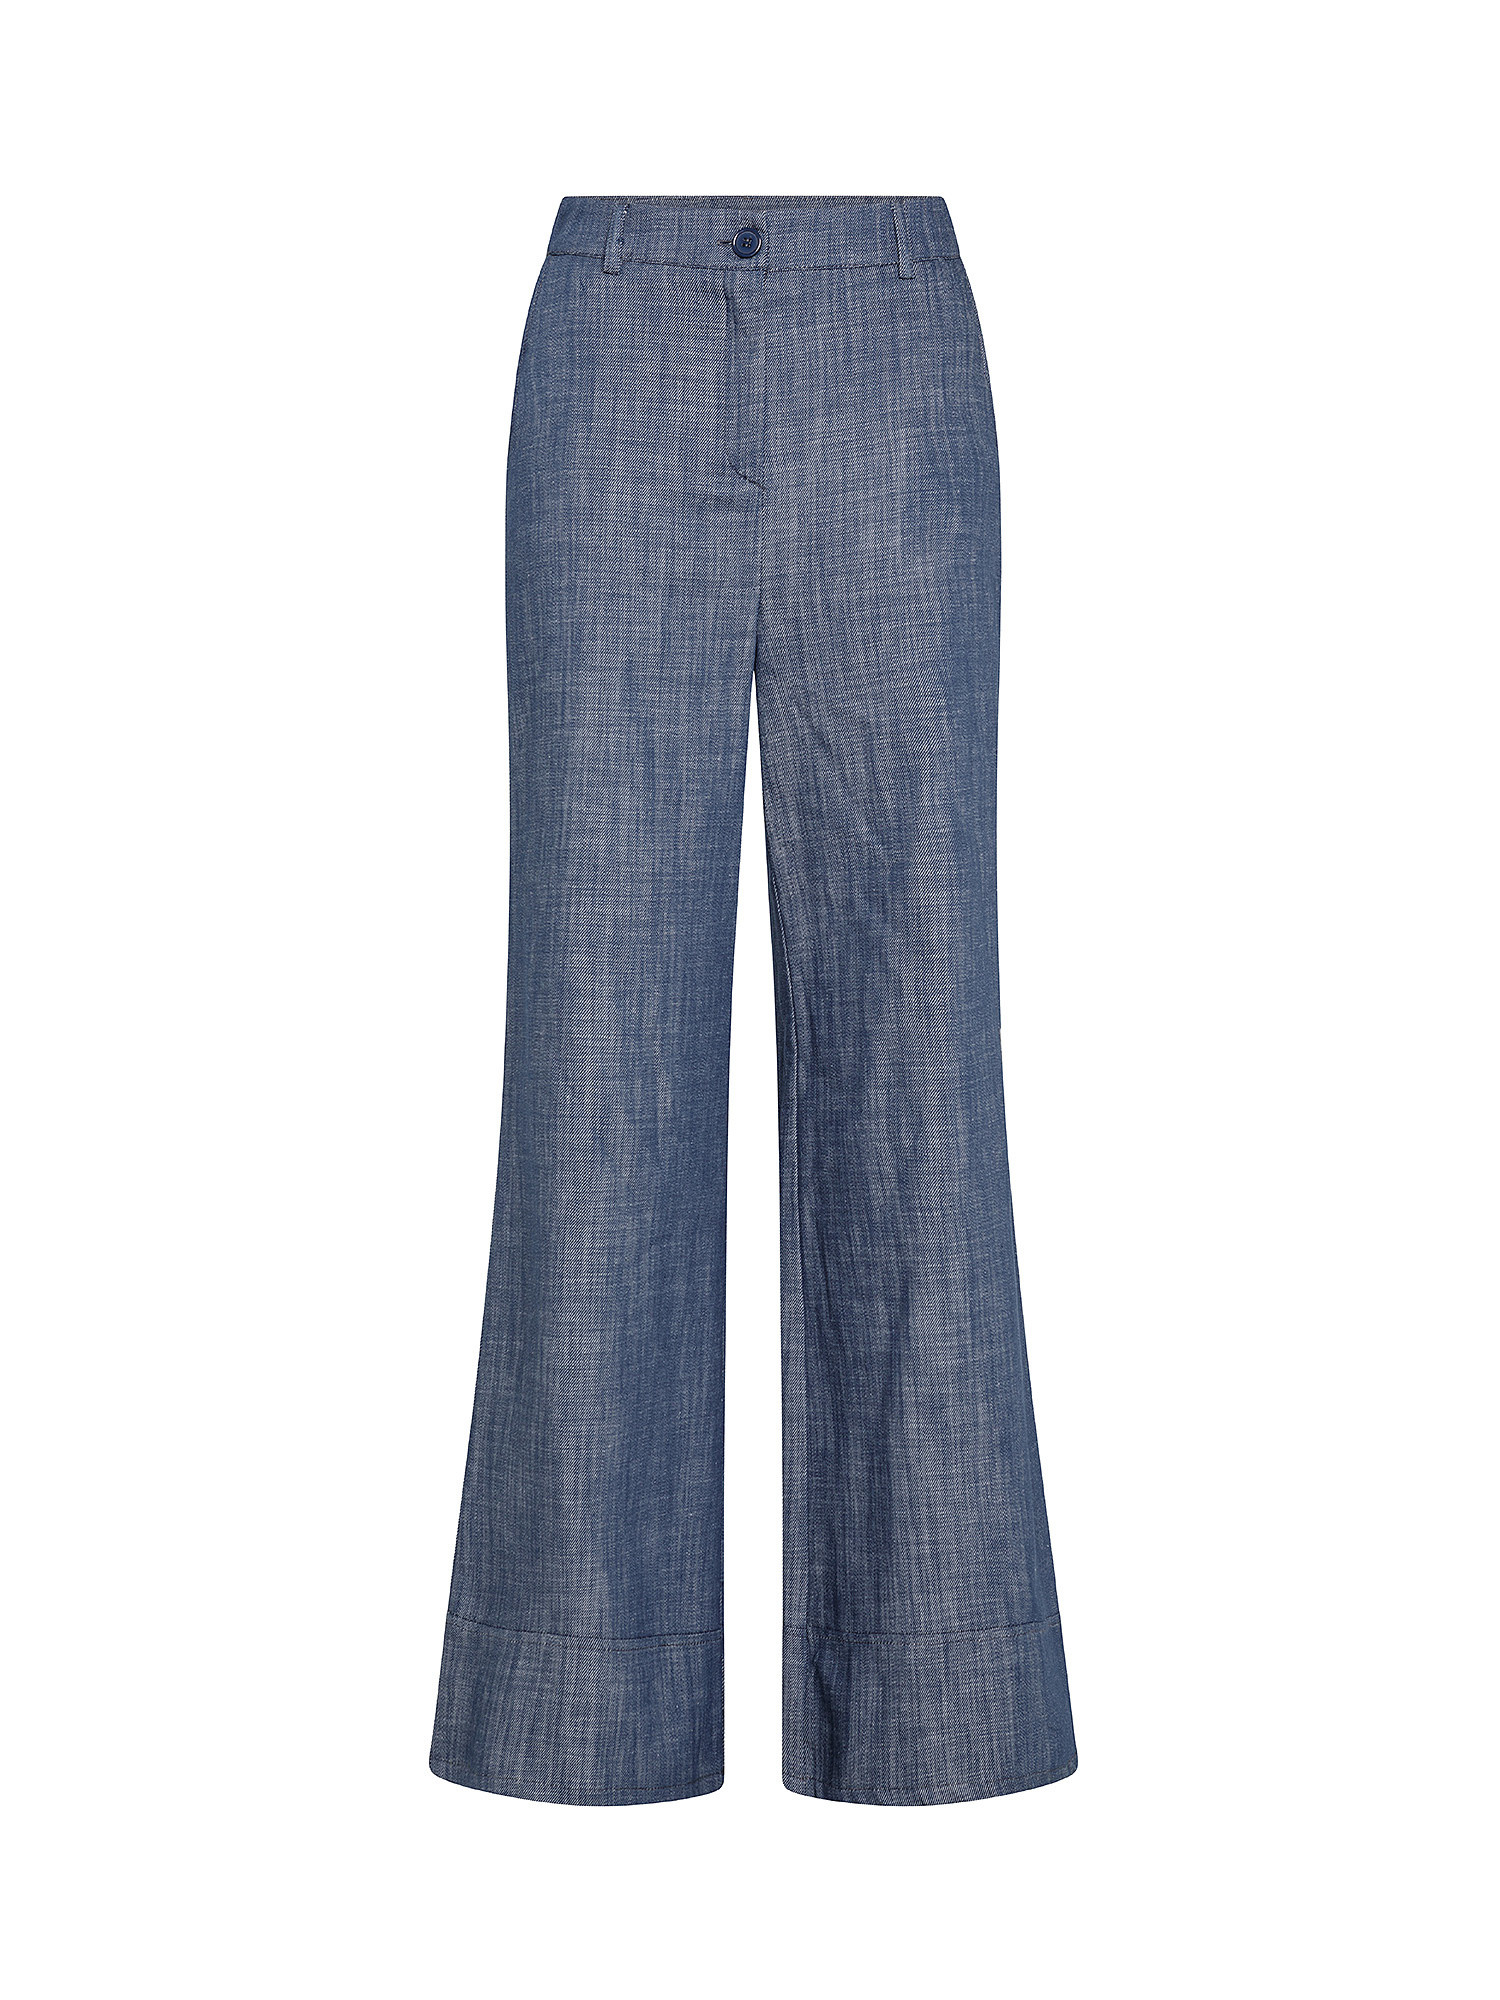 Five-pocket trousers, Denim, large image number 0